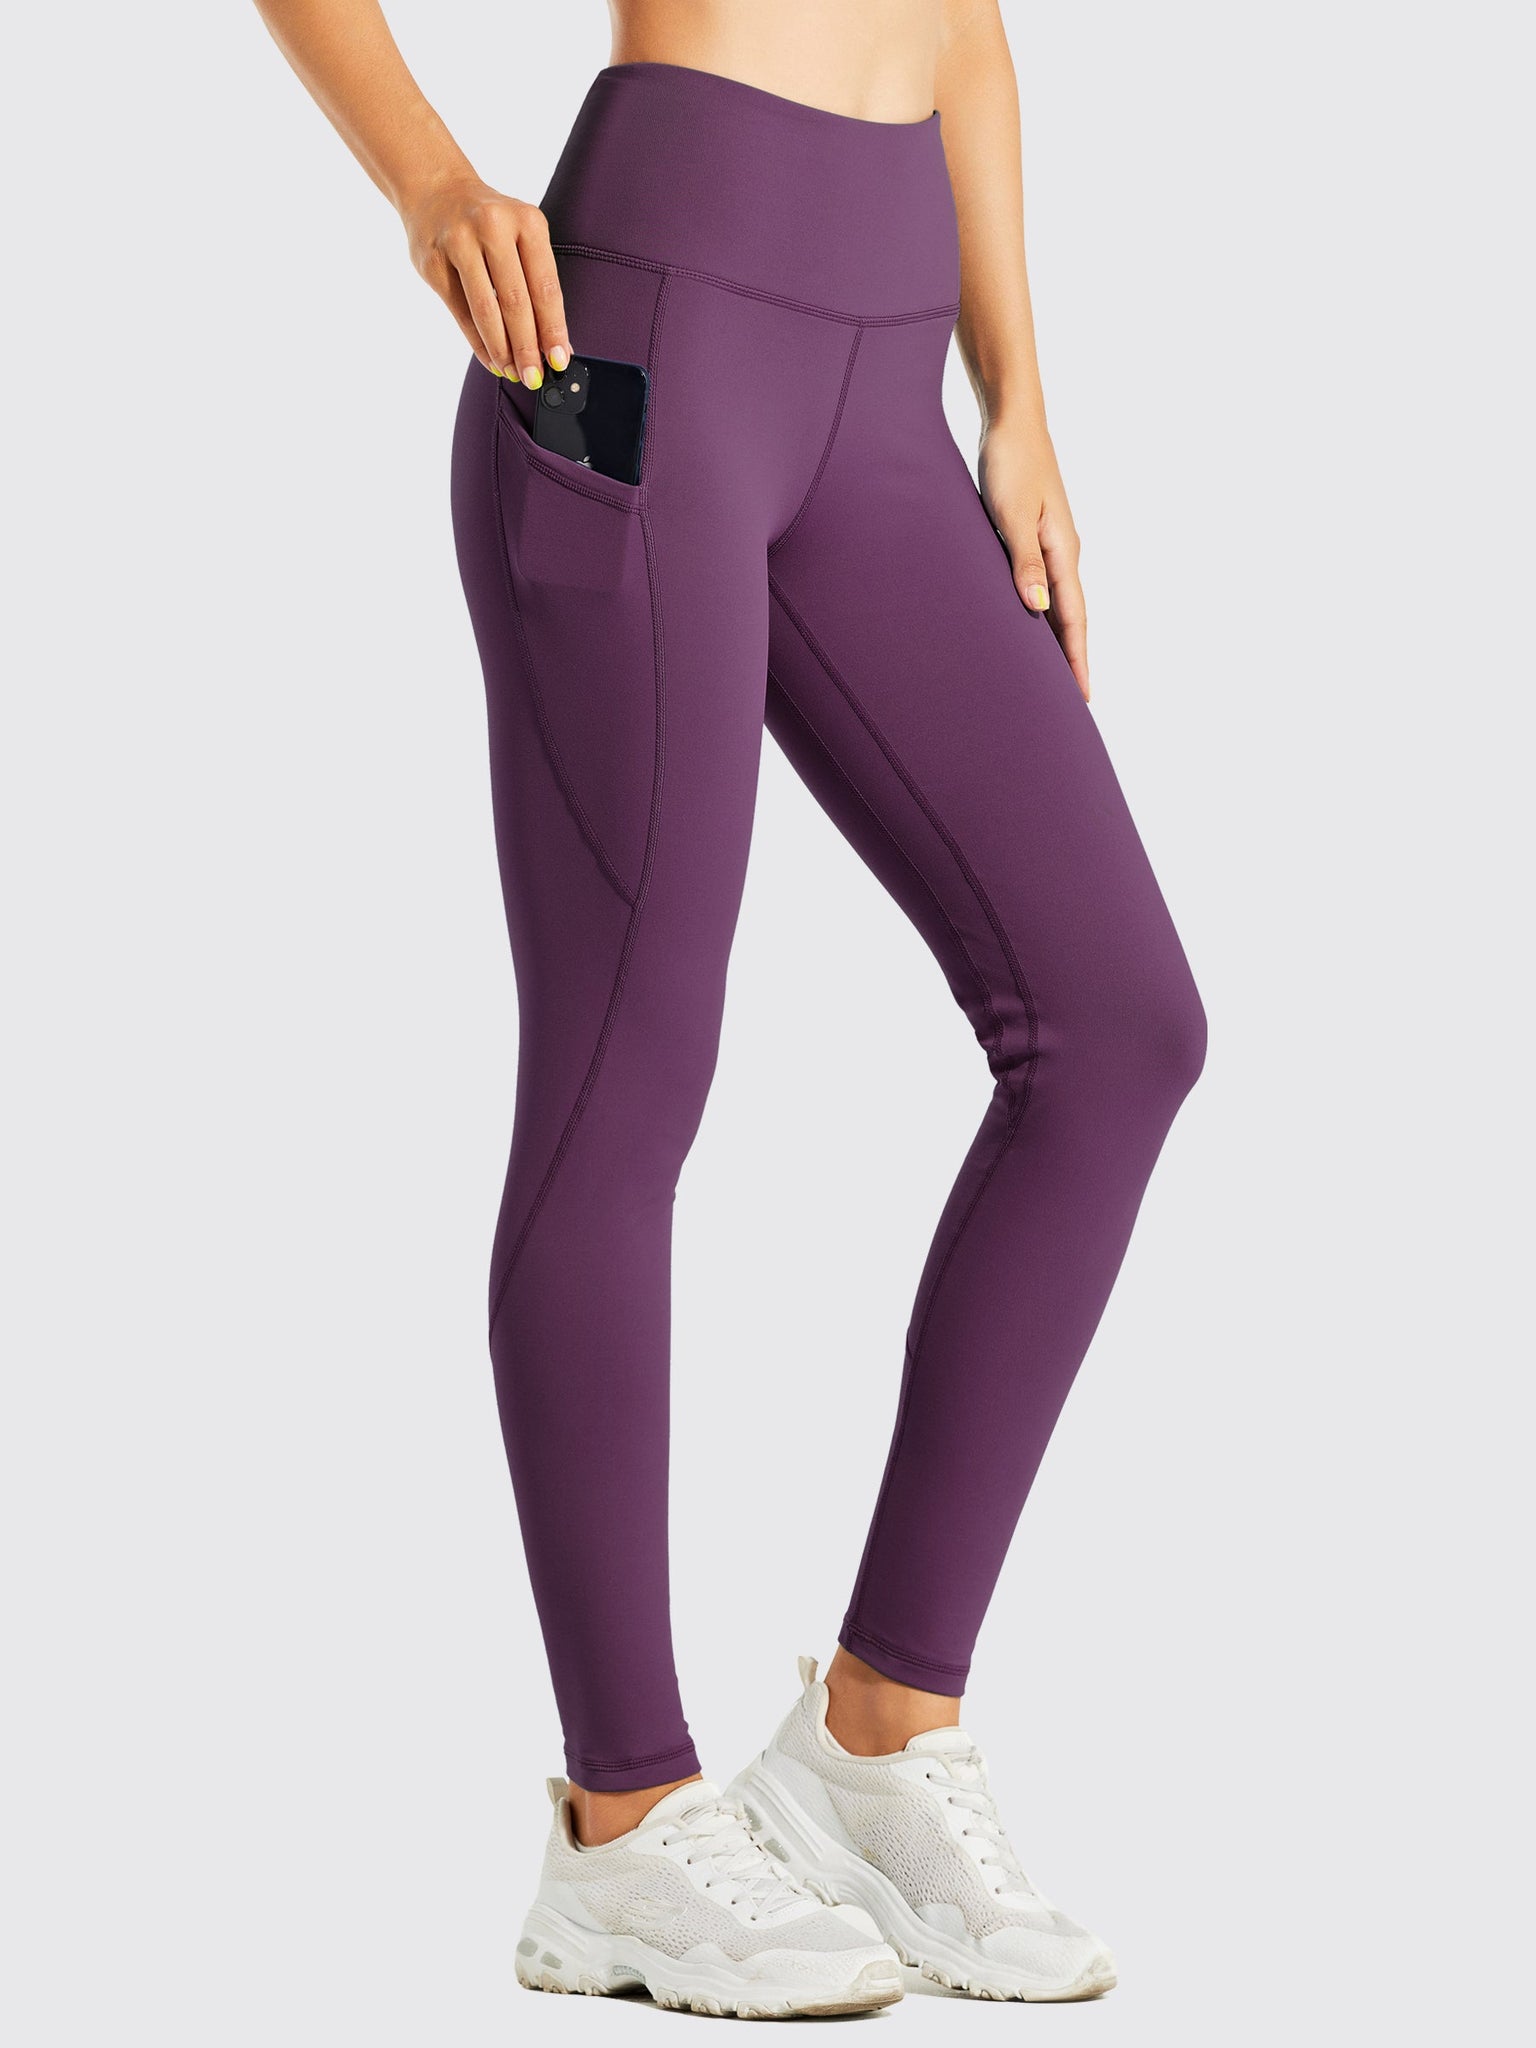 Women's Fleece Lined Leggings_Purple_model1